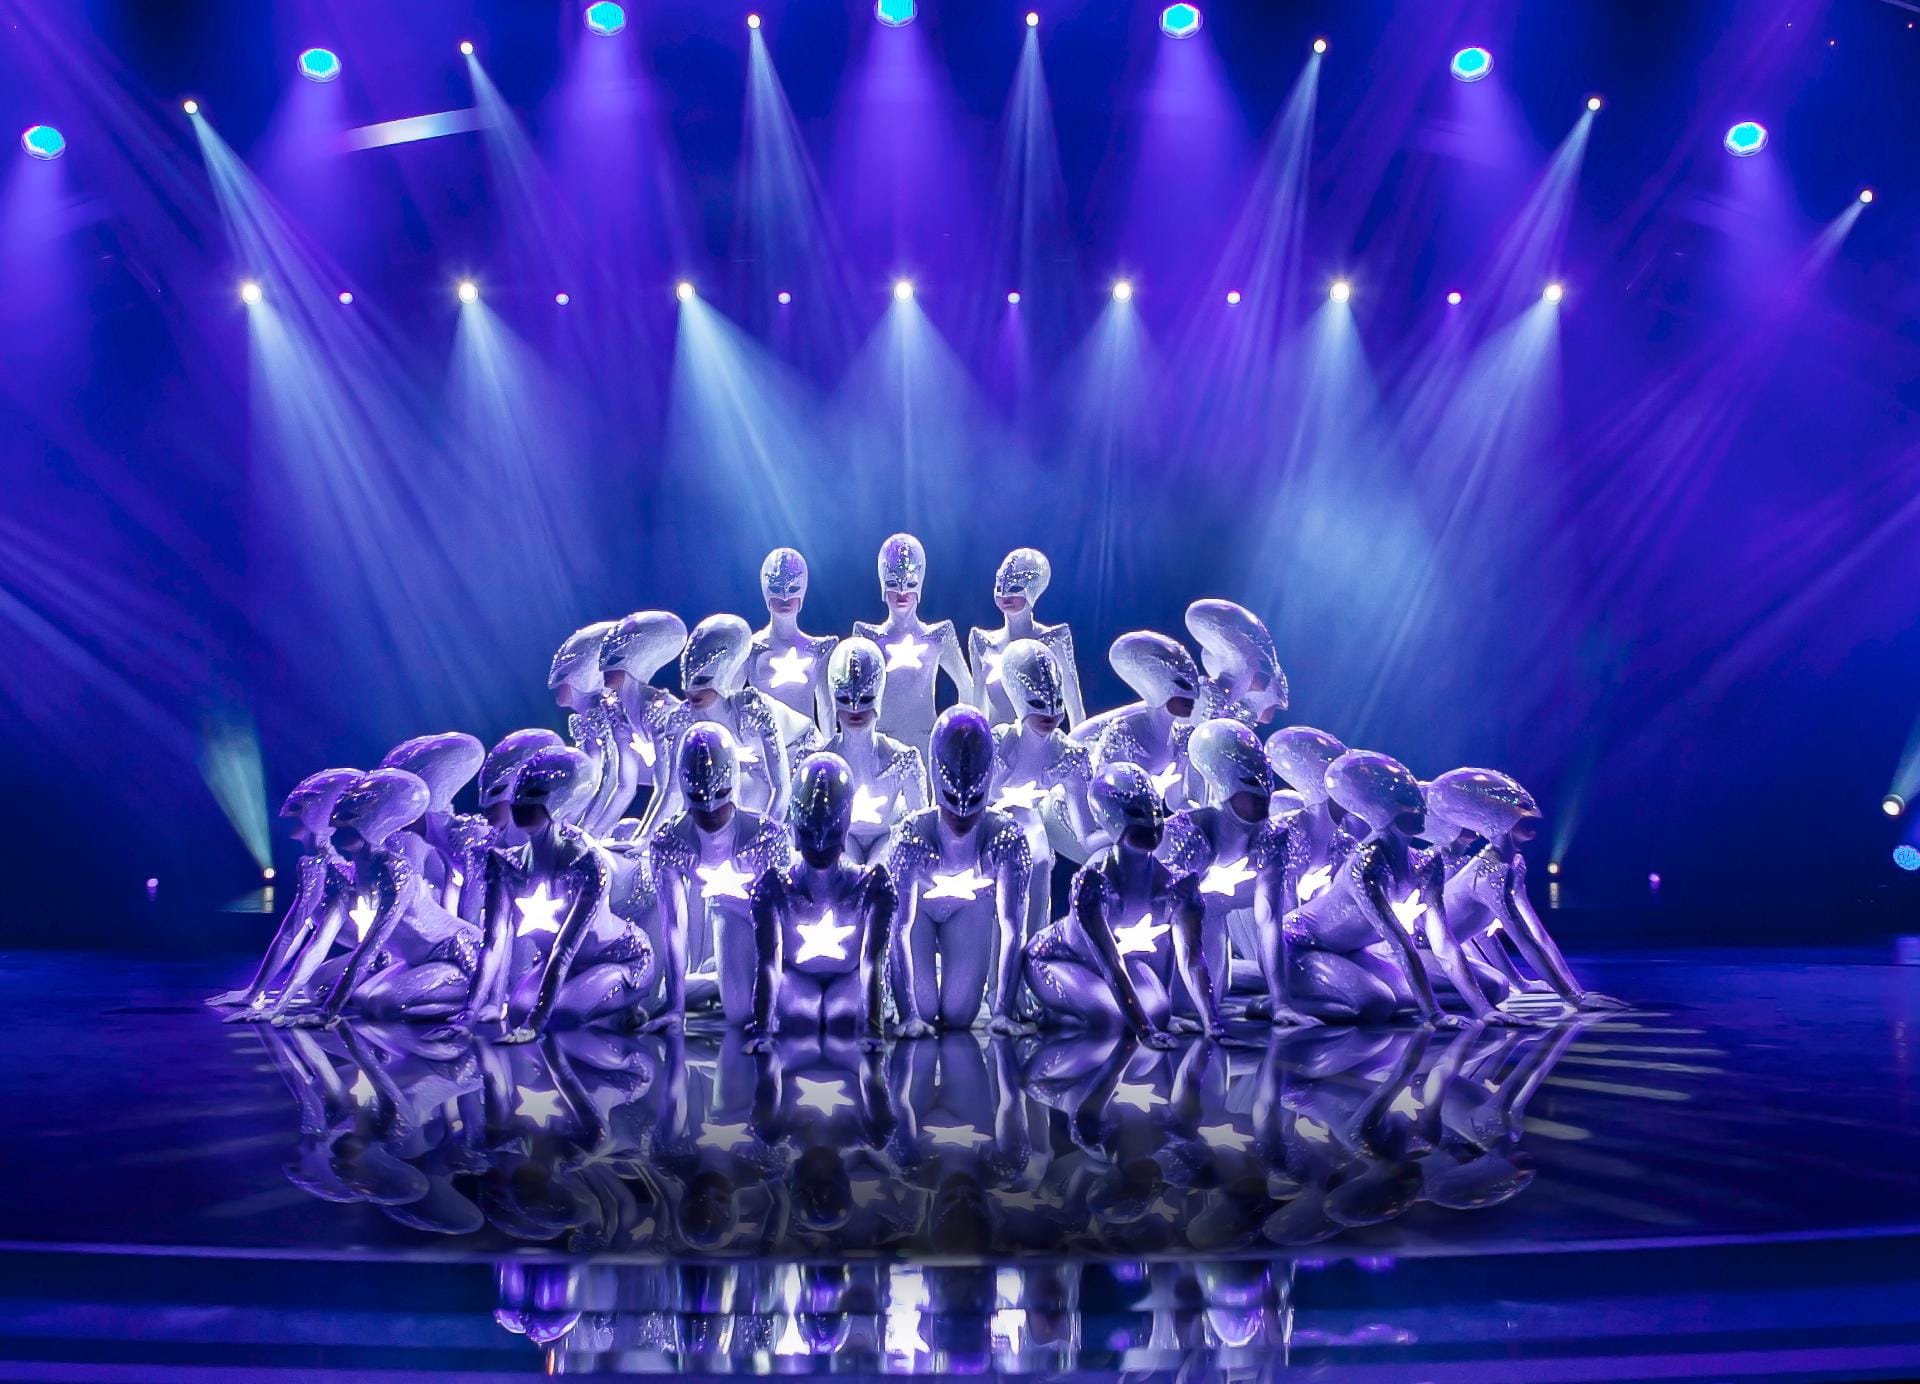 Die aktuelle Show heißt "The Wyld". Mit zehn Millionen Euro Produktionskosten ist die kosmische Lovestory die teuerste Show außerhalb von Las Vegas. Es ist ein Mix aus futuristischen Kostüme, verblüffender Bühnentechnik, Akrobatik und den langbeinigen Ladys des Tanzensembles.